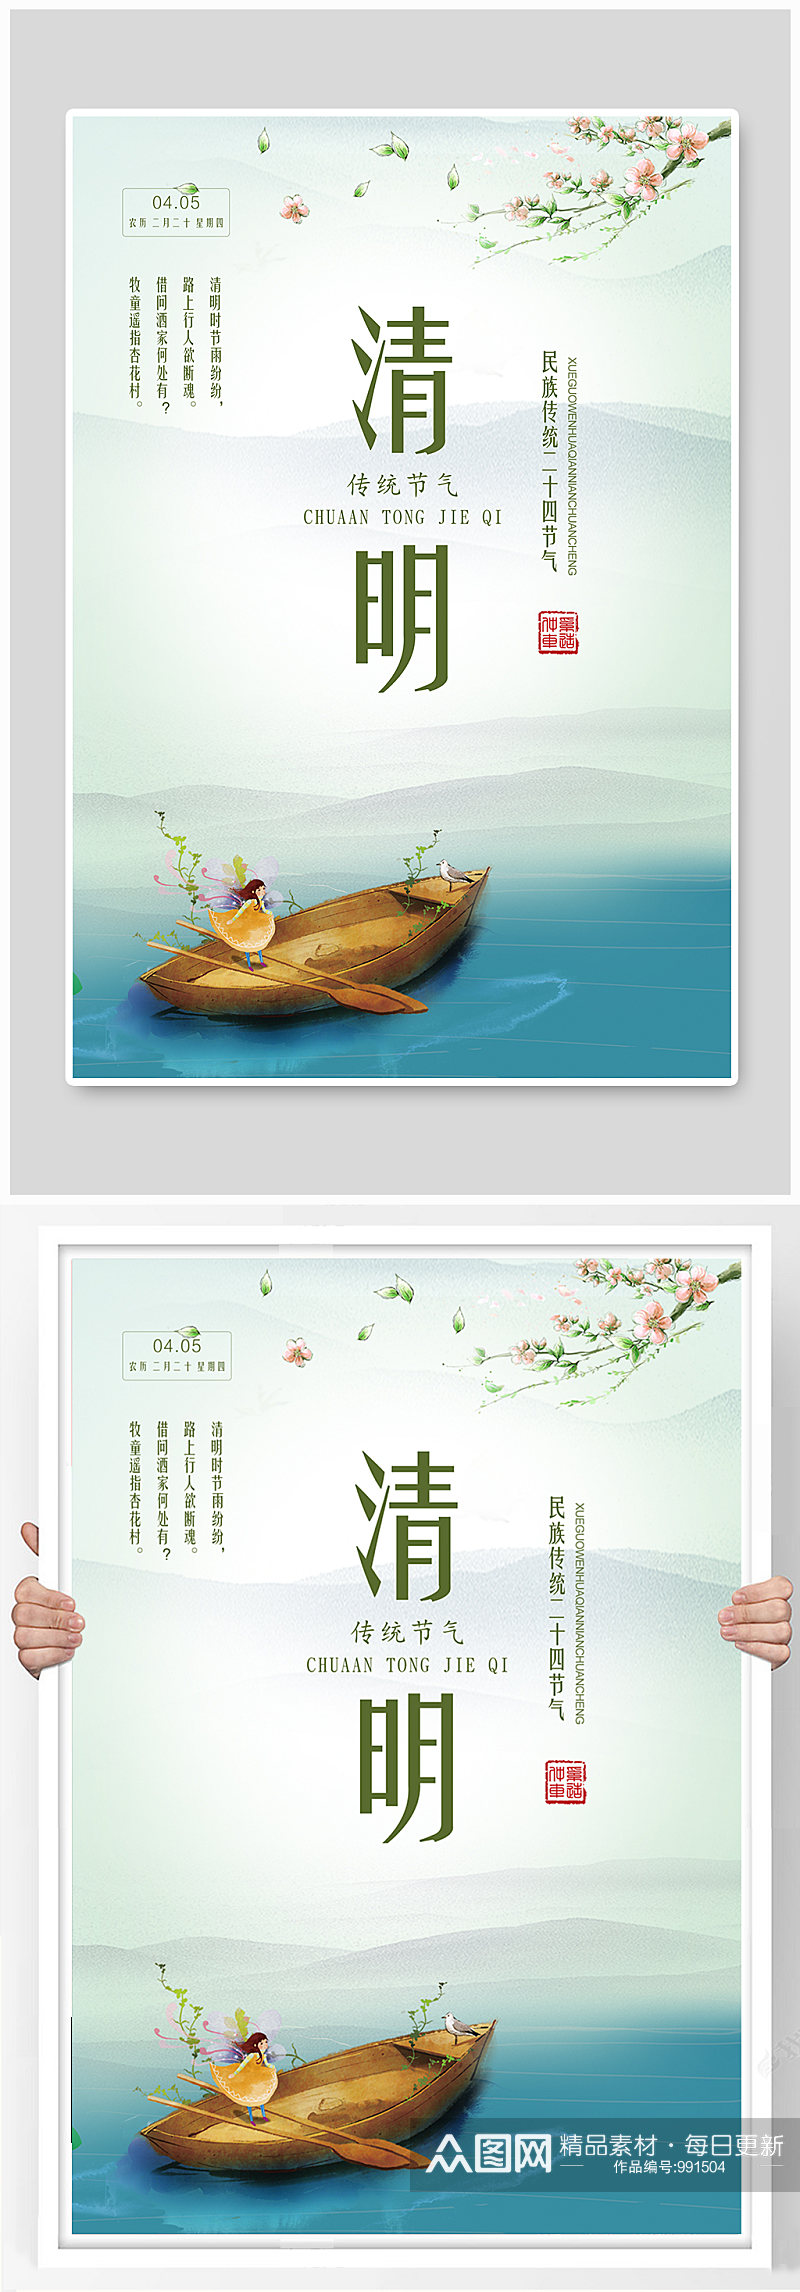 清明节传统节日宣传海报设计素材